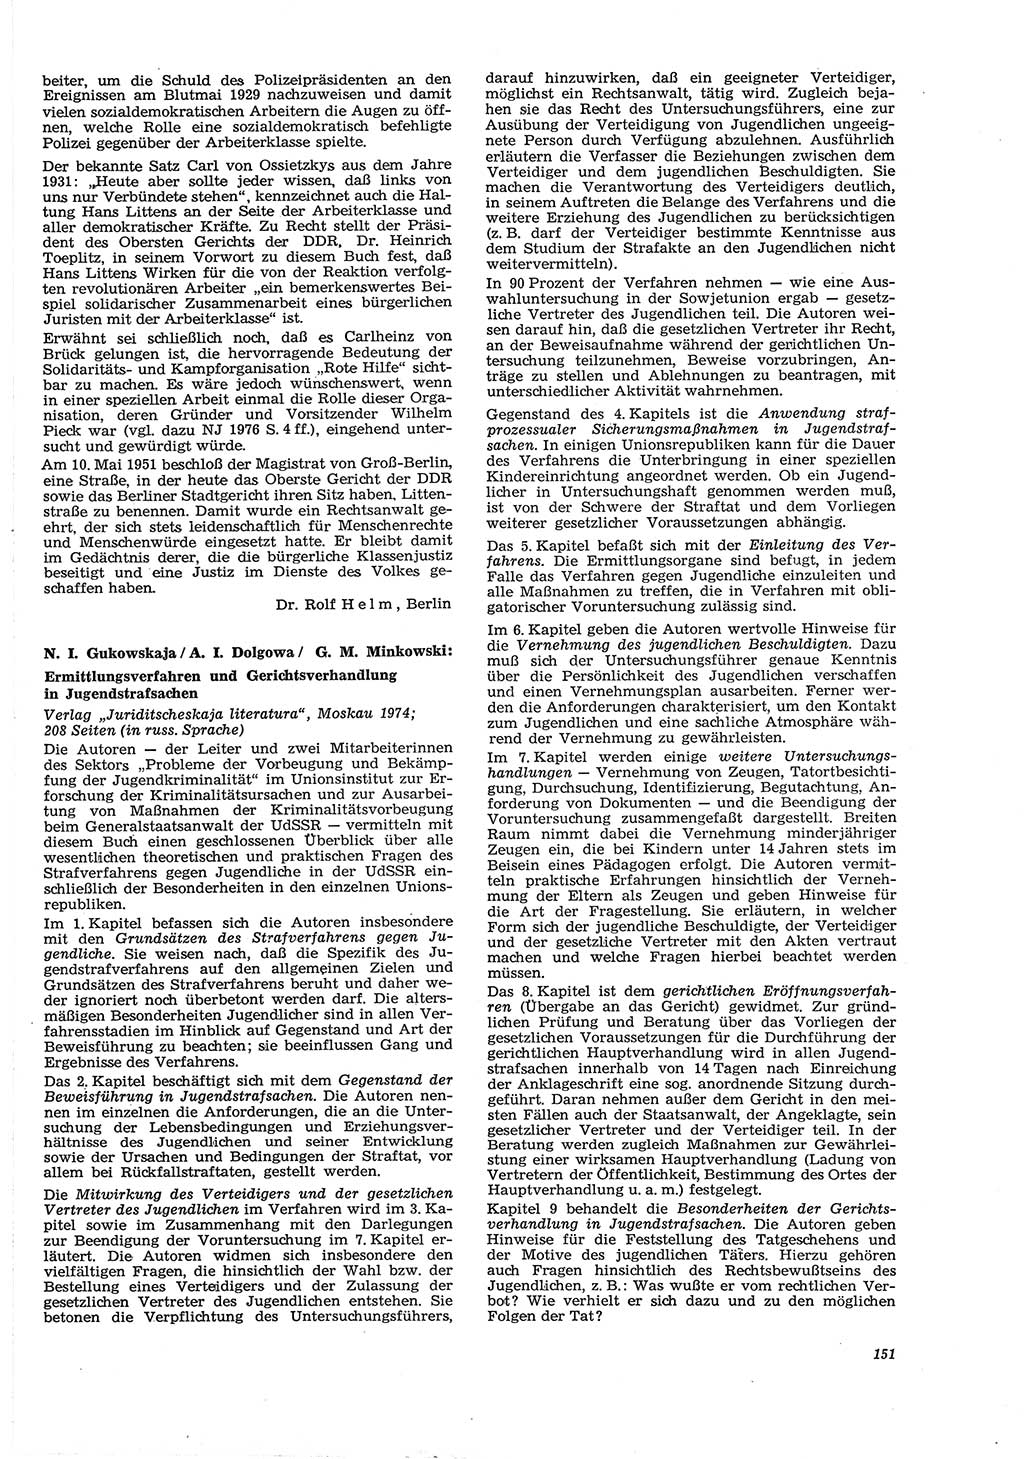 Neue Justiz (NJ), Zeitschrift für Recht und Rechtswissenschaft [Deutsche Demokratische Republik (DDR)], 30. Jahrgang 1976, Seite 151 (NJ DDR 1976, S. 151)